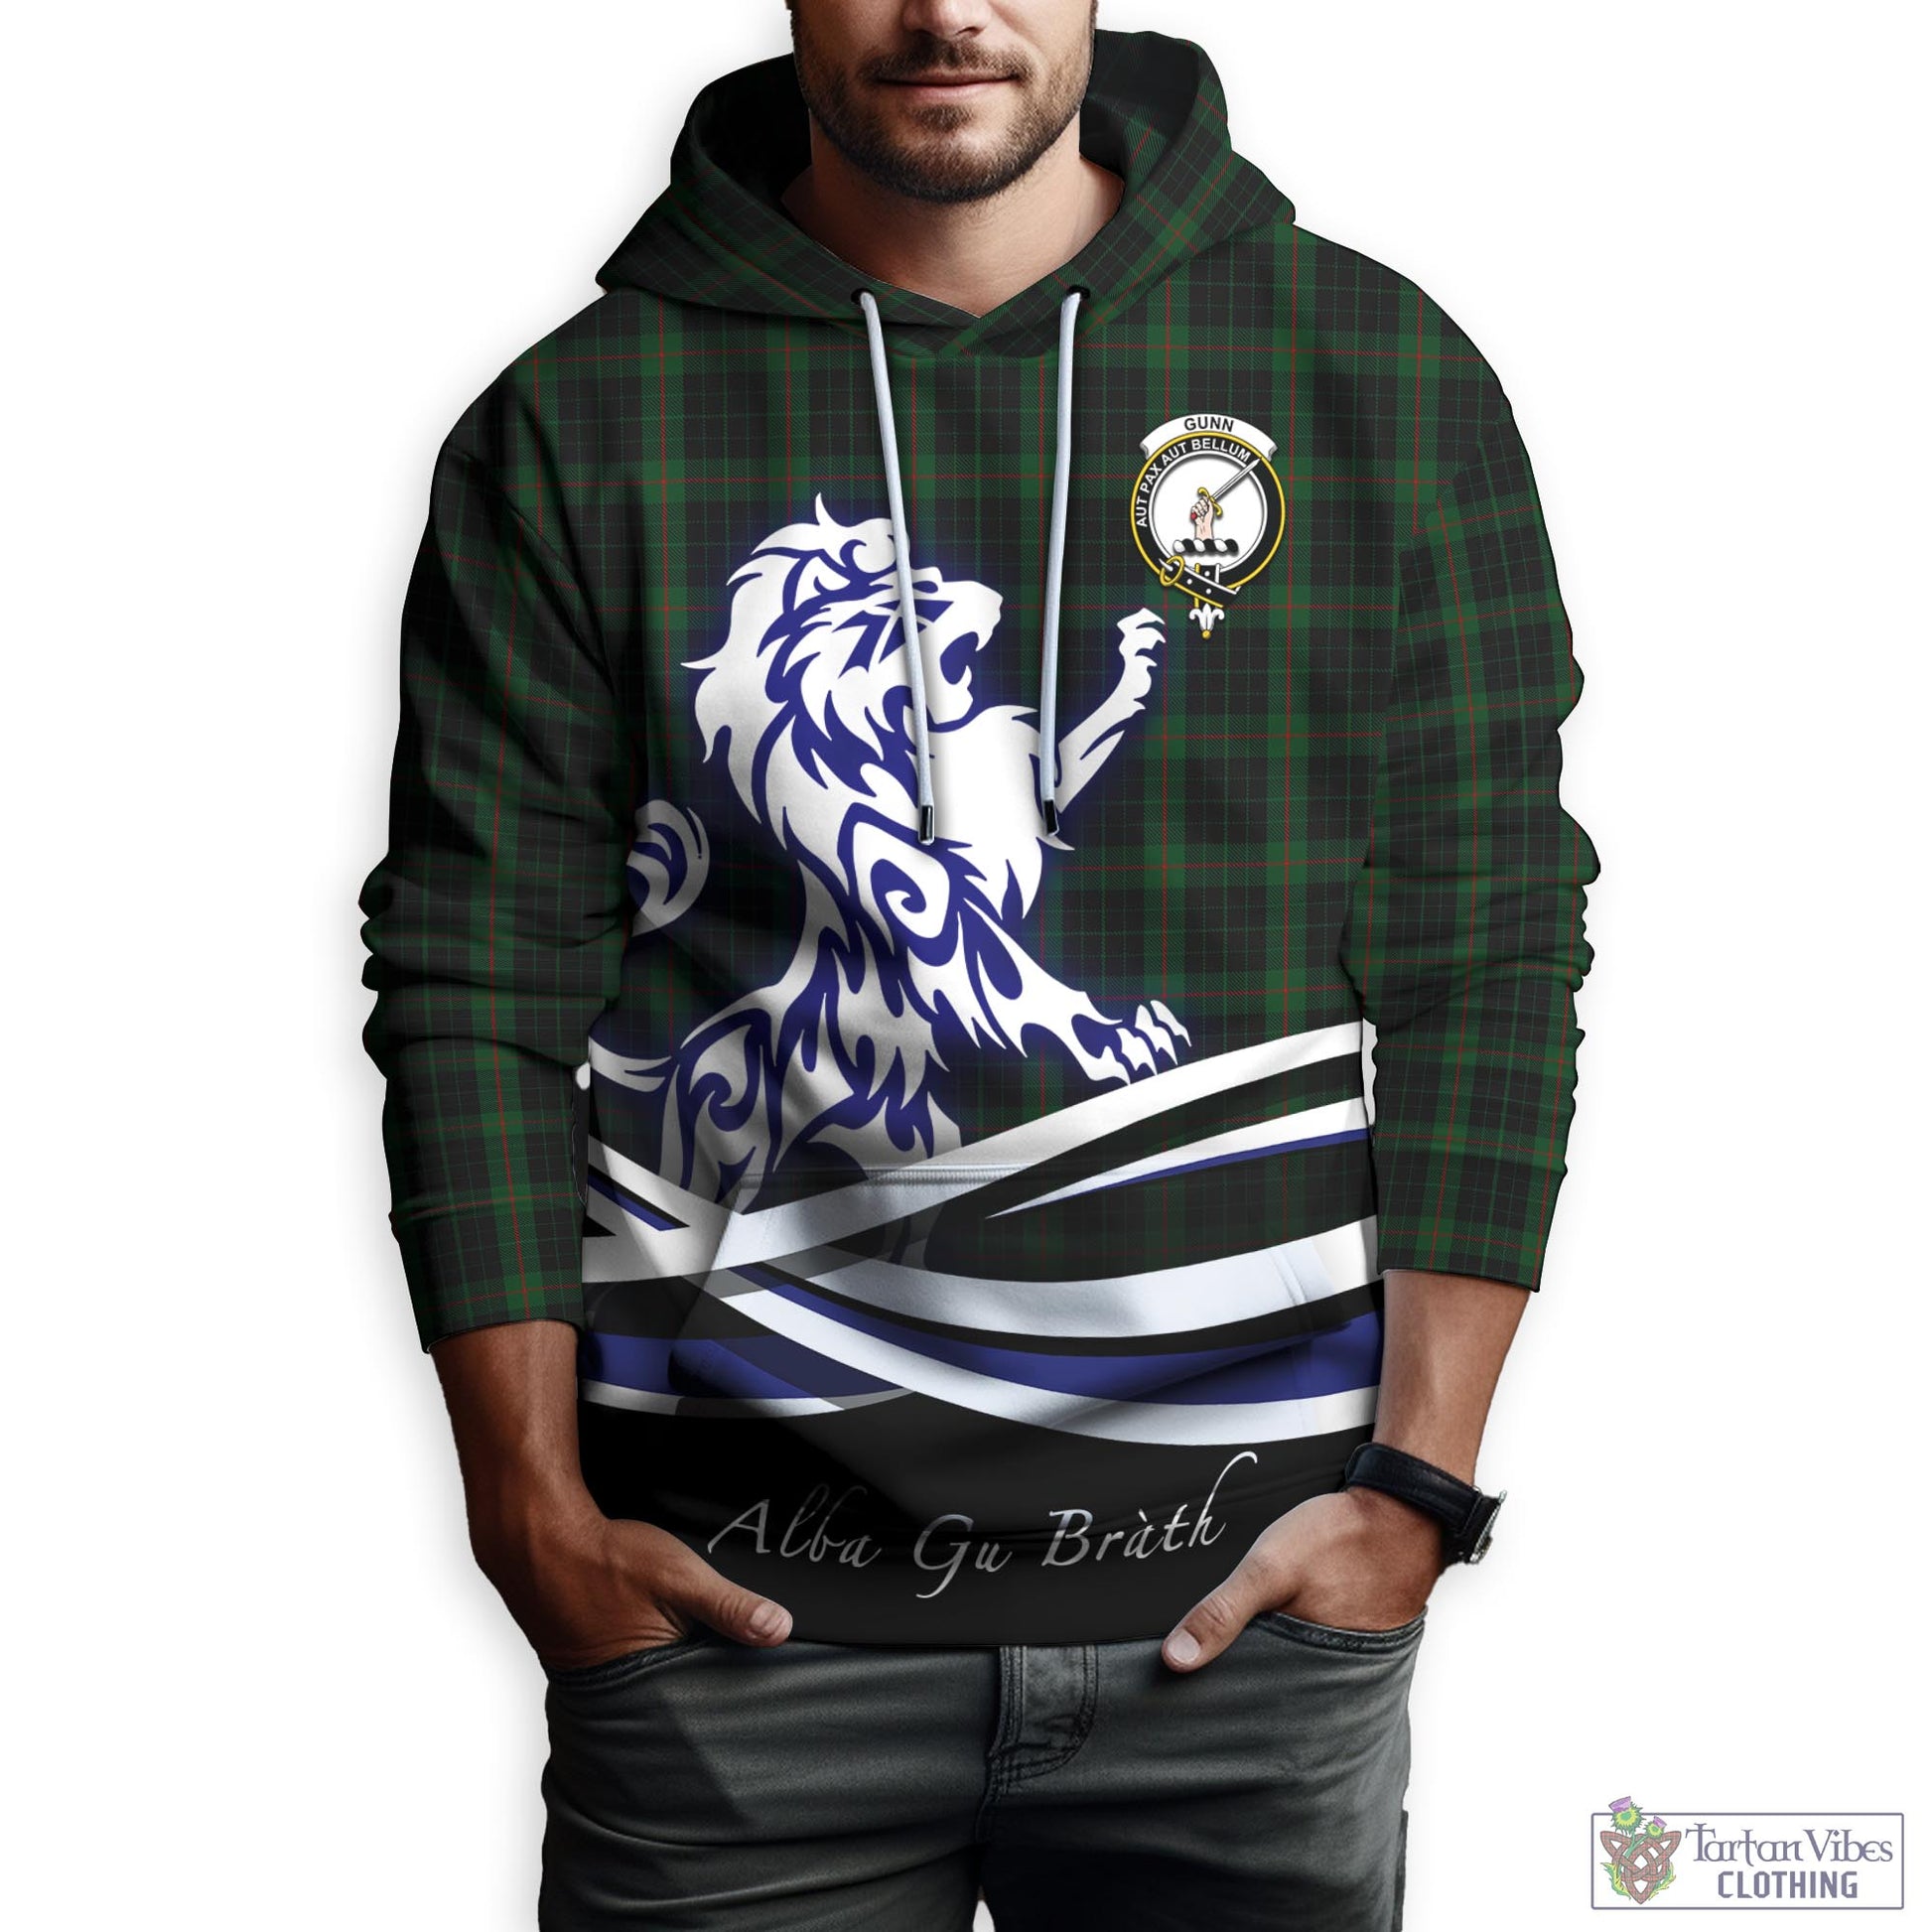 gunn-logan-tartan-hoodie-with-alba-gu-brath-regal-lion-emblem